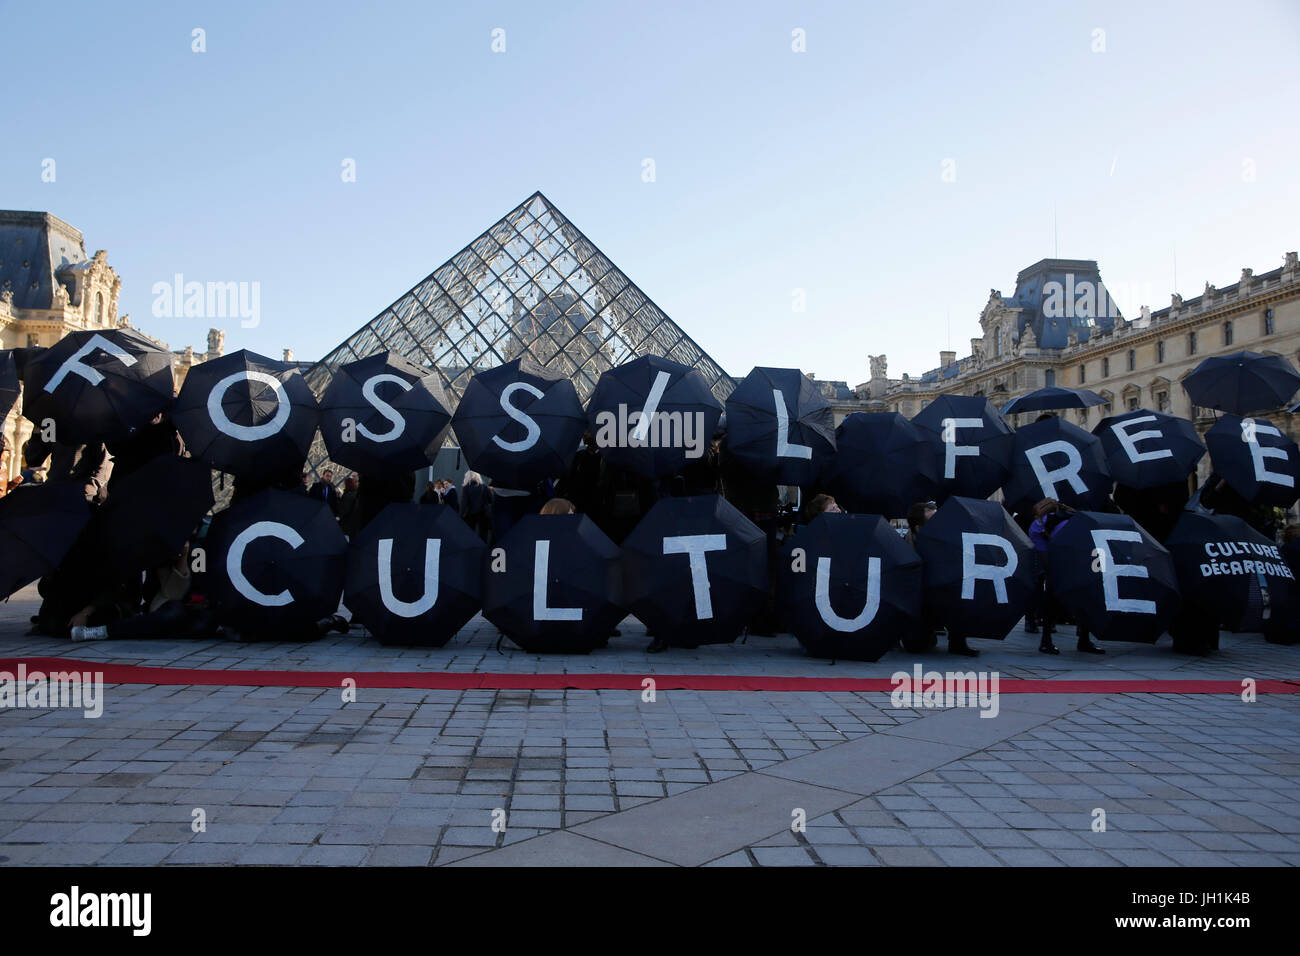 Manifestation à l'extérieur du Louvre au cours de la COP 21 sommet climatique. La France. Banque D'Images